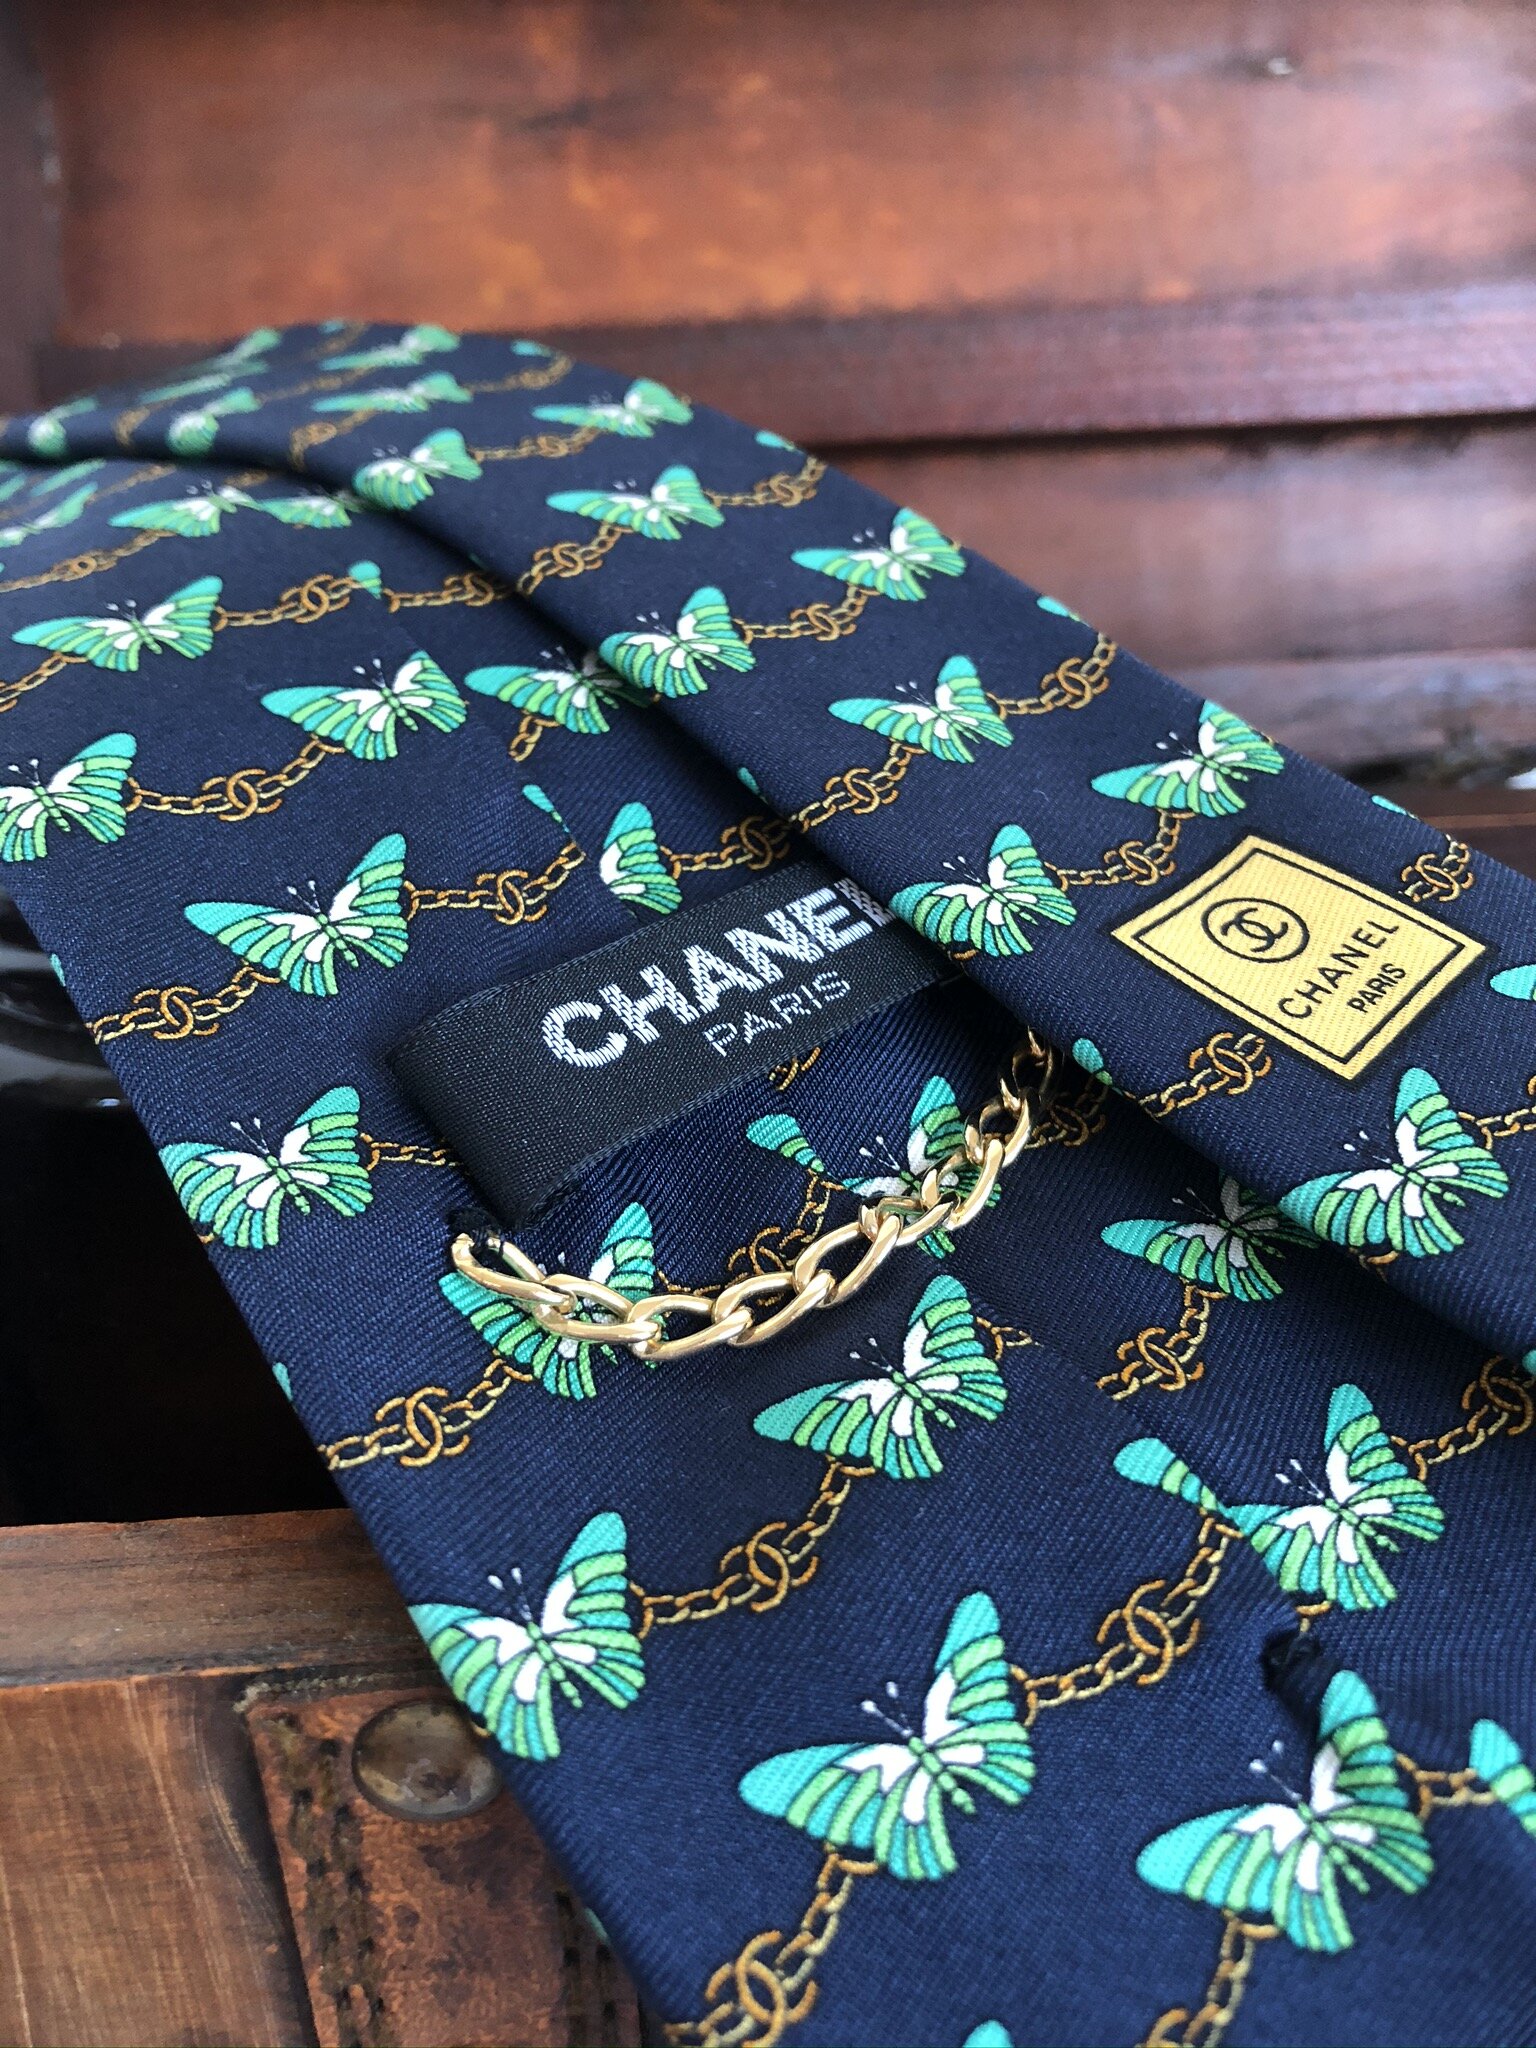 chanel neckties